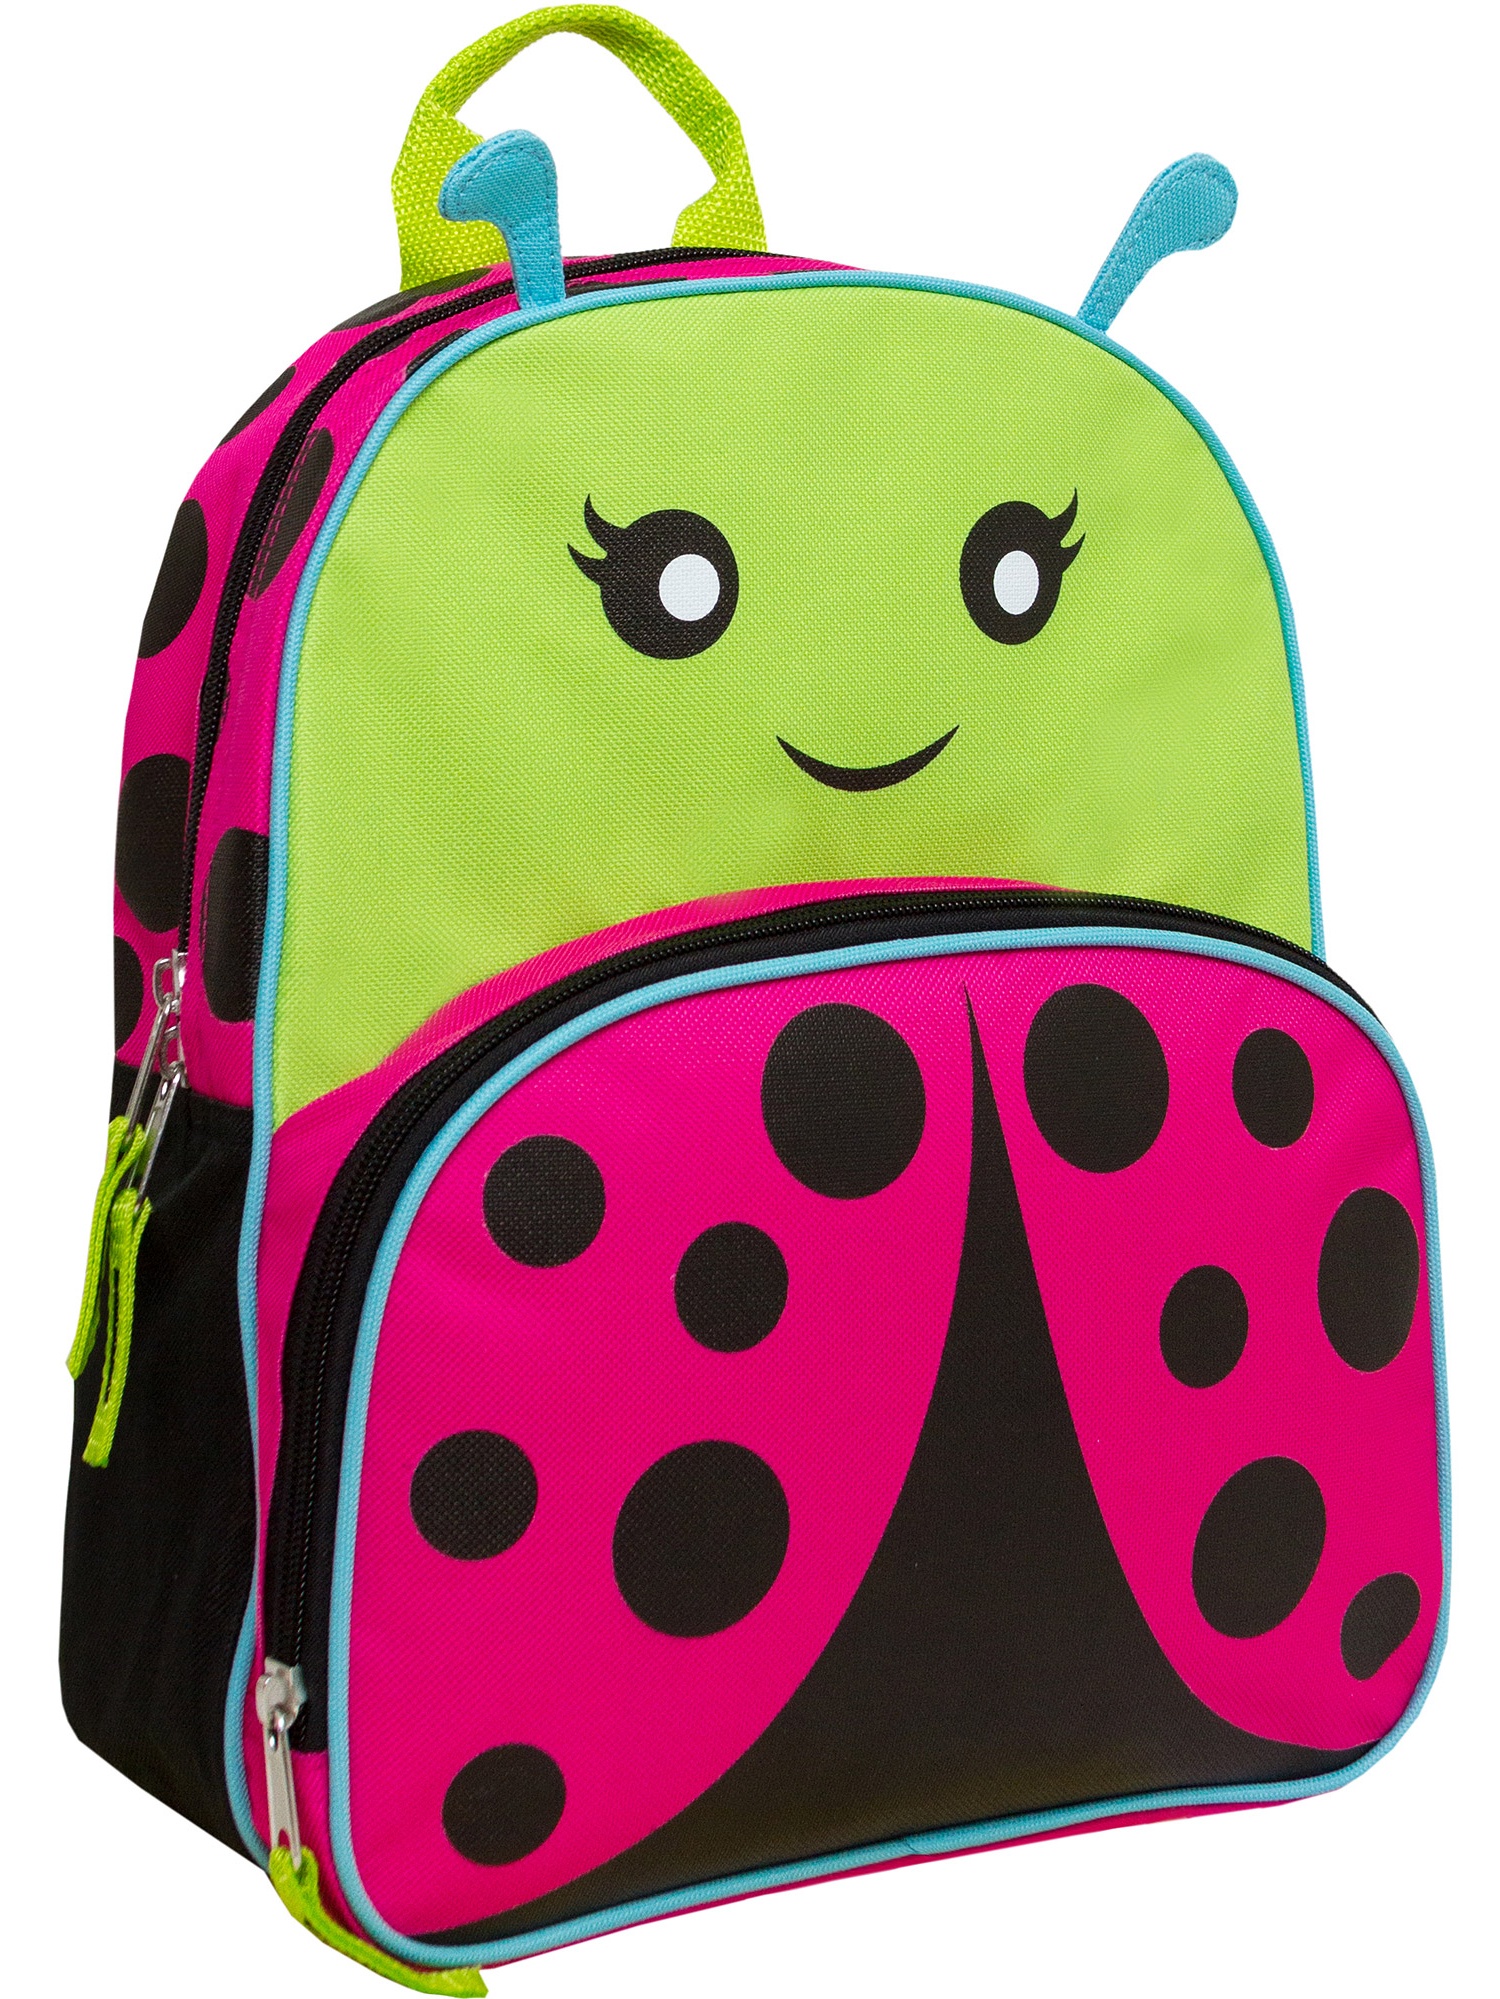 Animal Friends 12" Ladybug Backpack - image 1 of 1